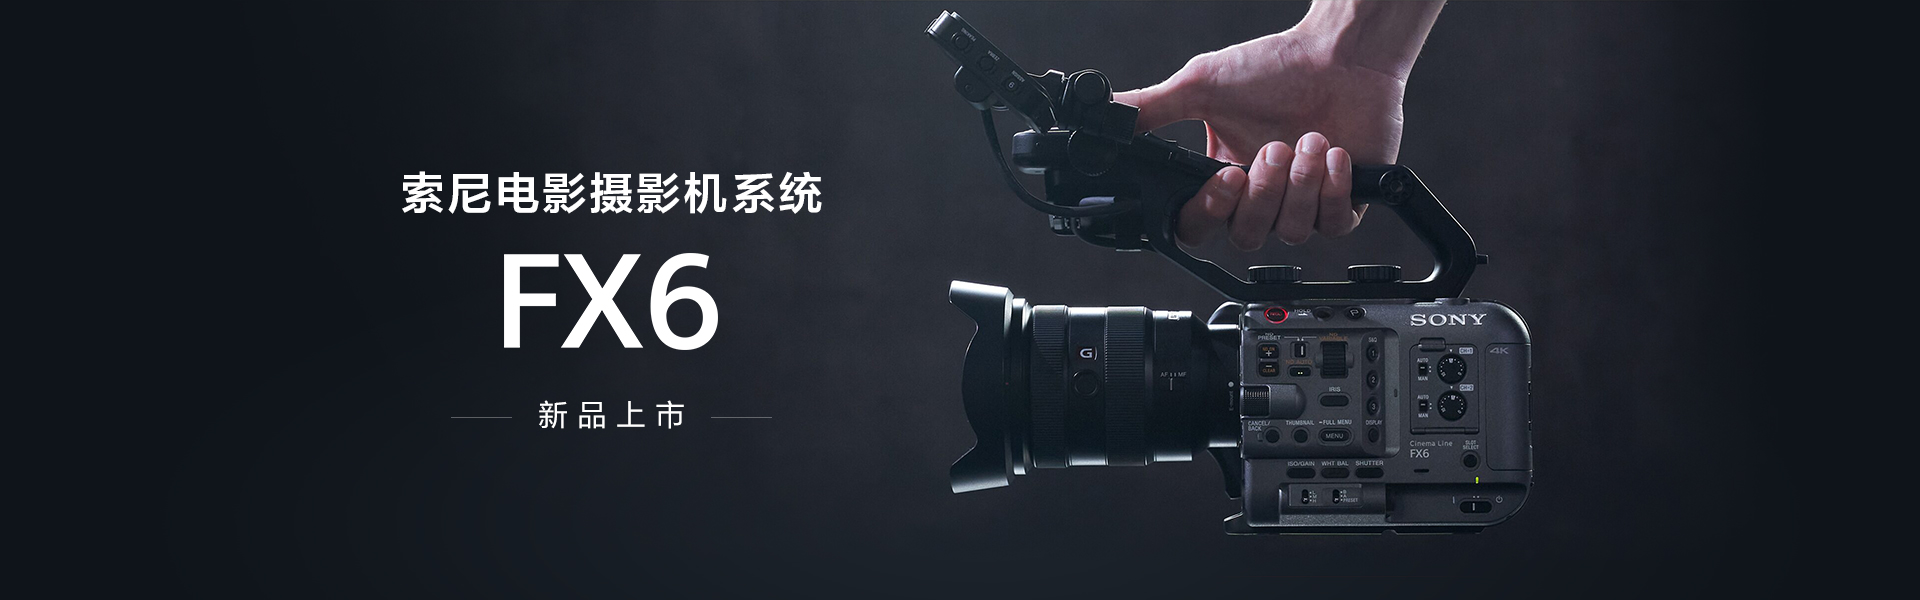 索尼电影摄影机系统FX6 